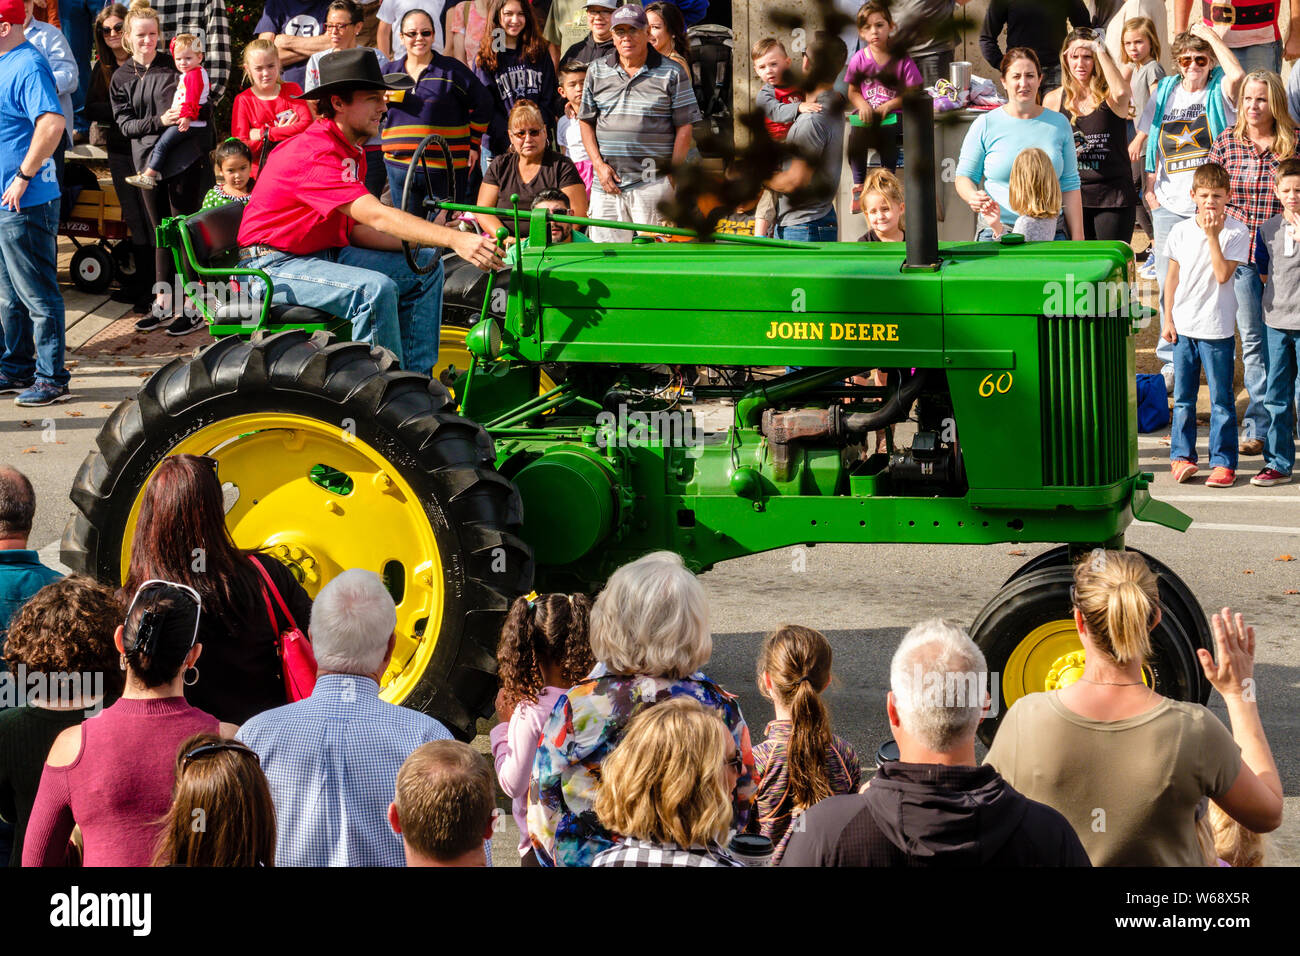 Tracteur agricole John Deere vert brillant à Georgetown, défilé de Noël annuel au Texas. Banque D'Images